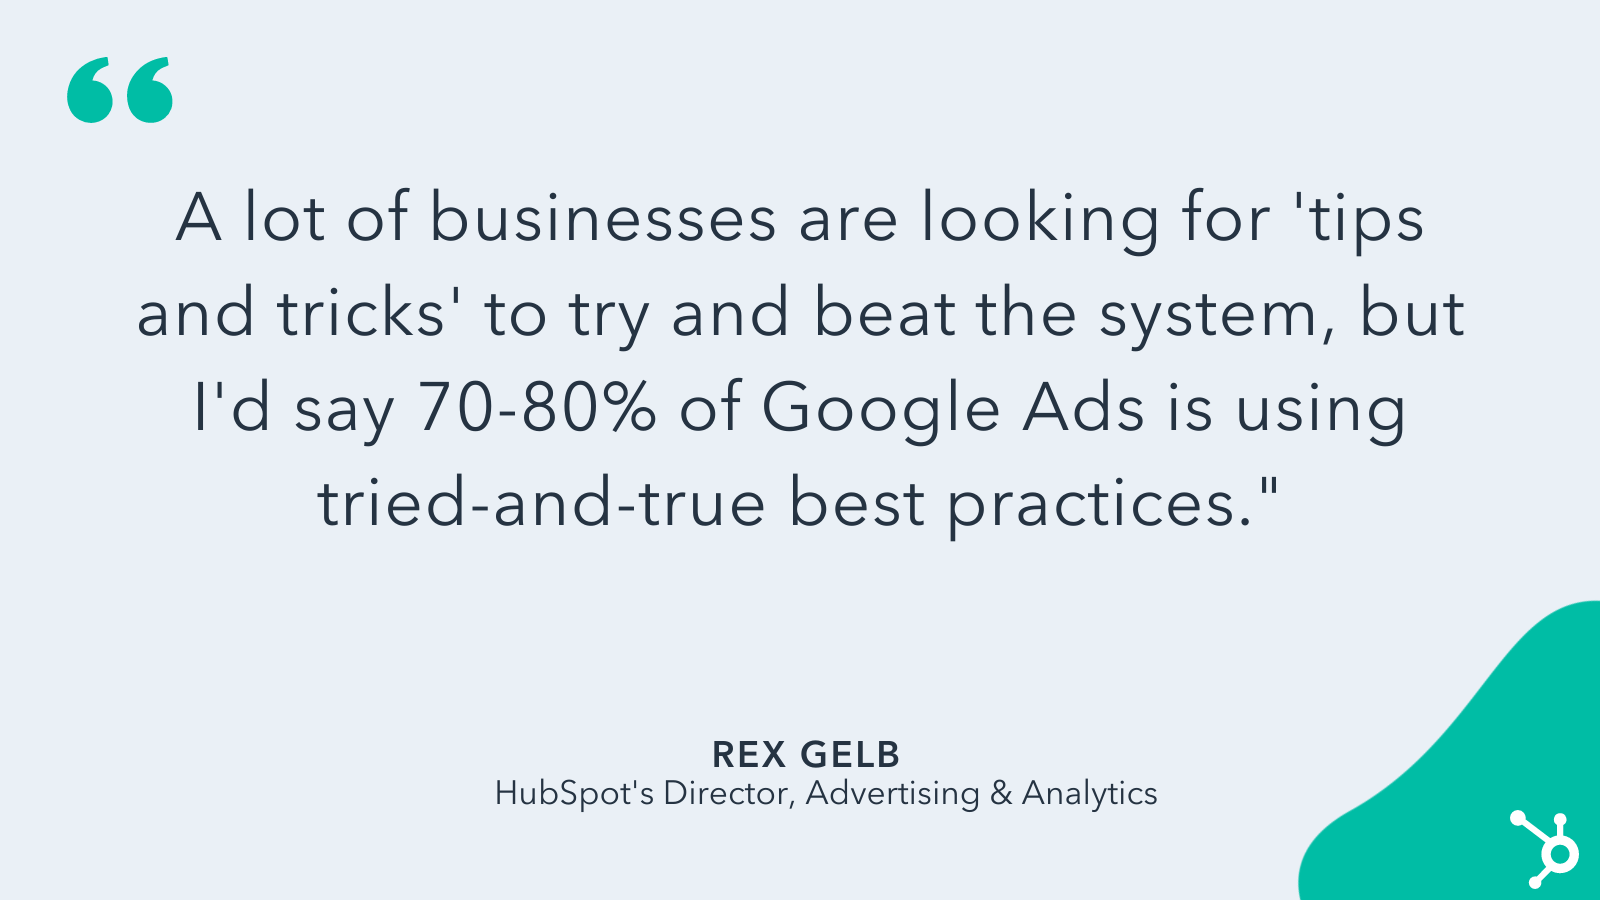 رکس گِلب در مورد استراتژی های تبلیغات گوگل برای کسب و کارهای کوچک